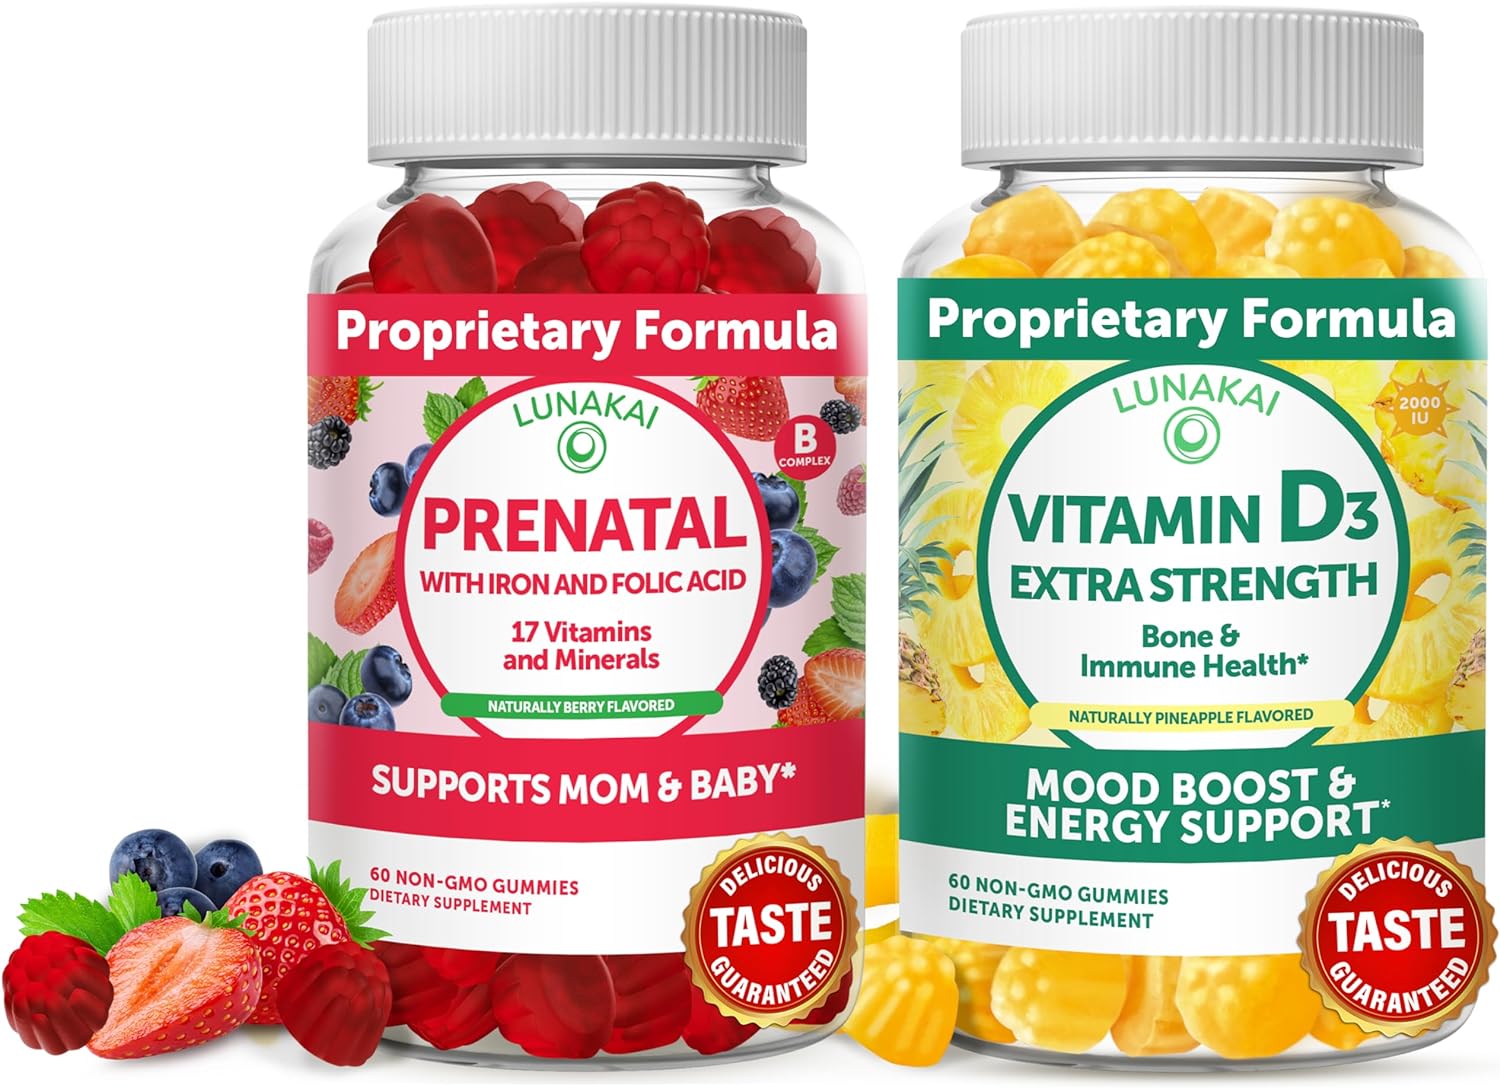 Prenatal and Vitamin D3 Gummies Bundle - Non-GMO, Gluten Free, No Corn Syrup All Natural Supplements - 60 ct Prenatal Gummies and 60 ct Vitamin D3 Gummies - 30 Days Supply